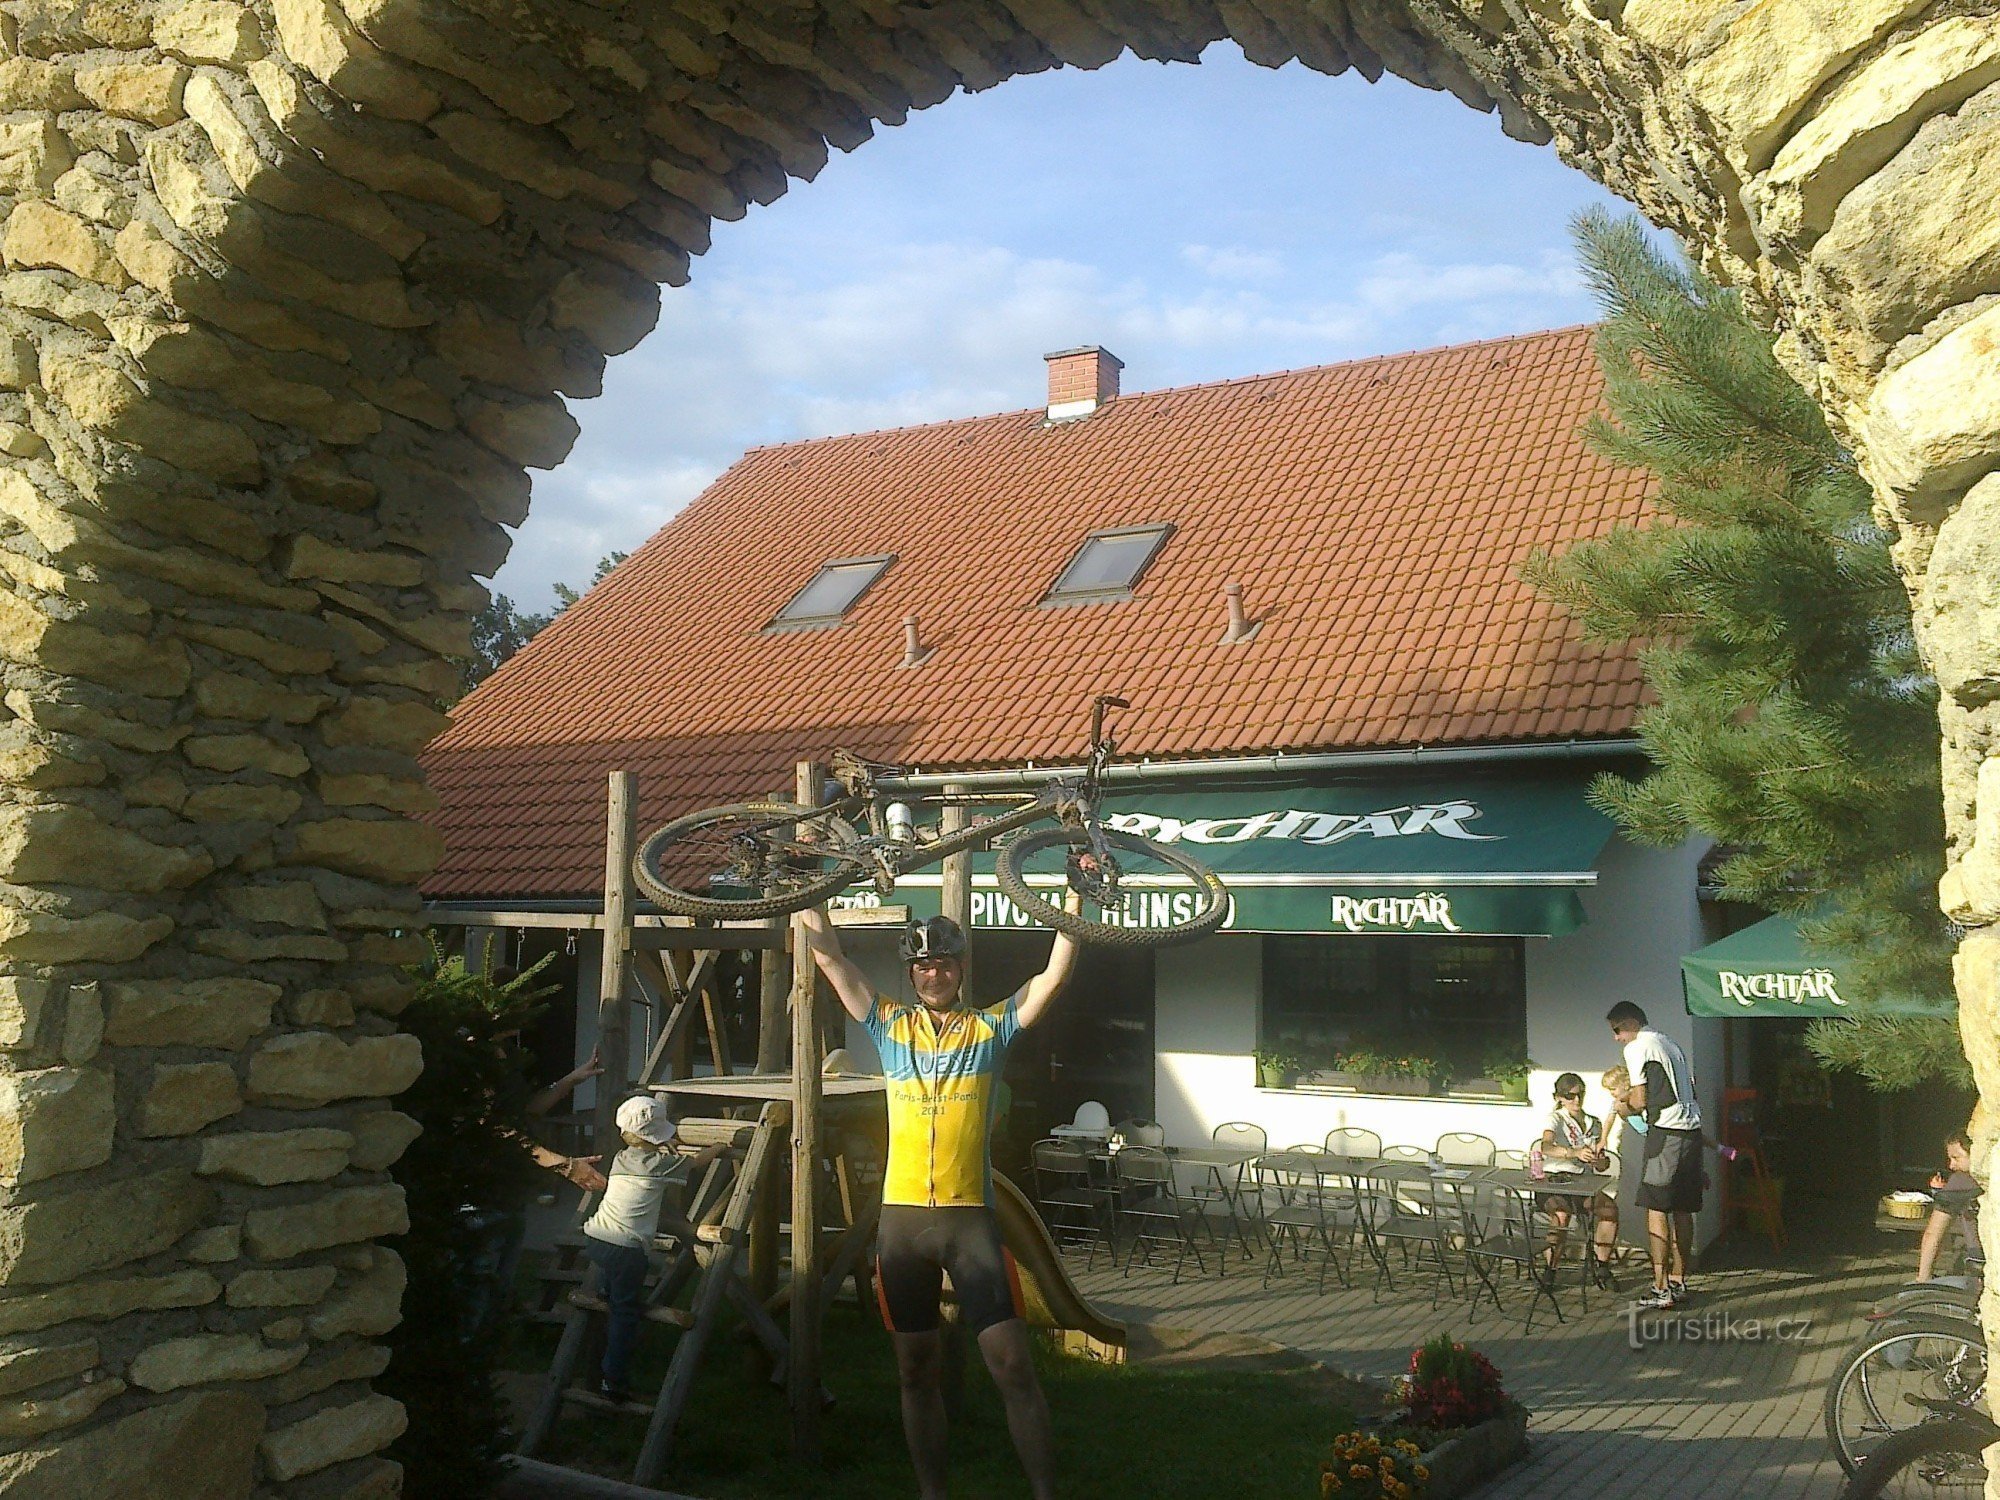 Pelestrovská pub - en oas för cyklister och längdskidåkare